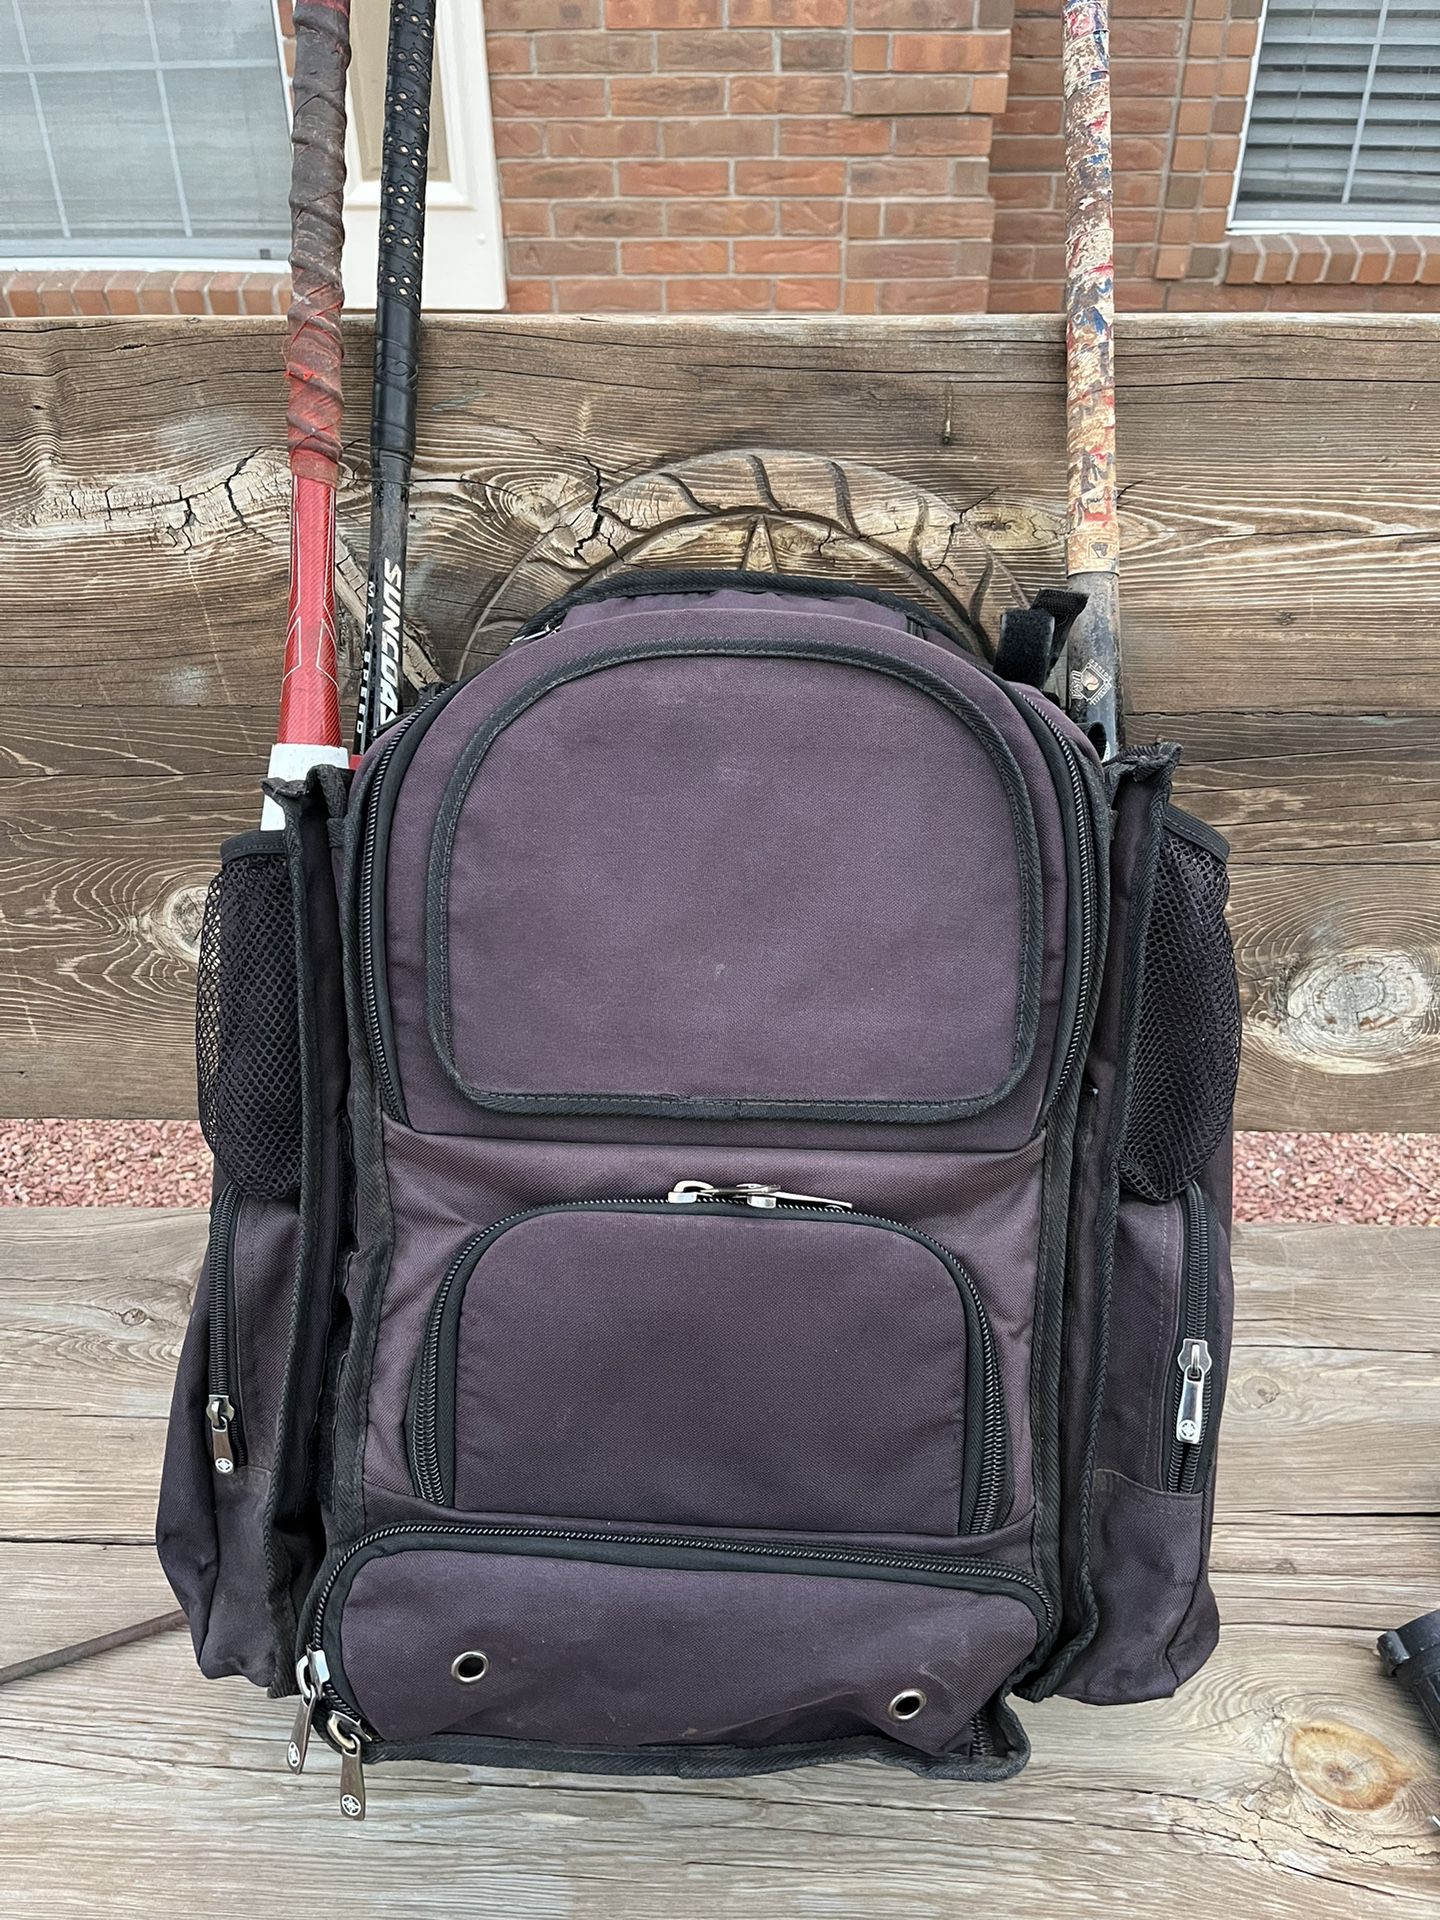 MaxBall softball/Baseball backpack 